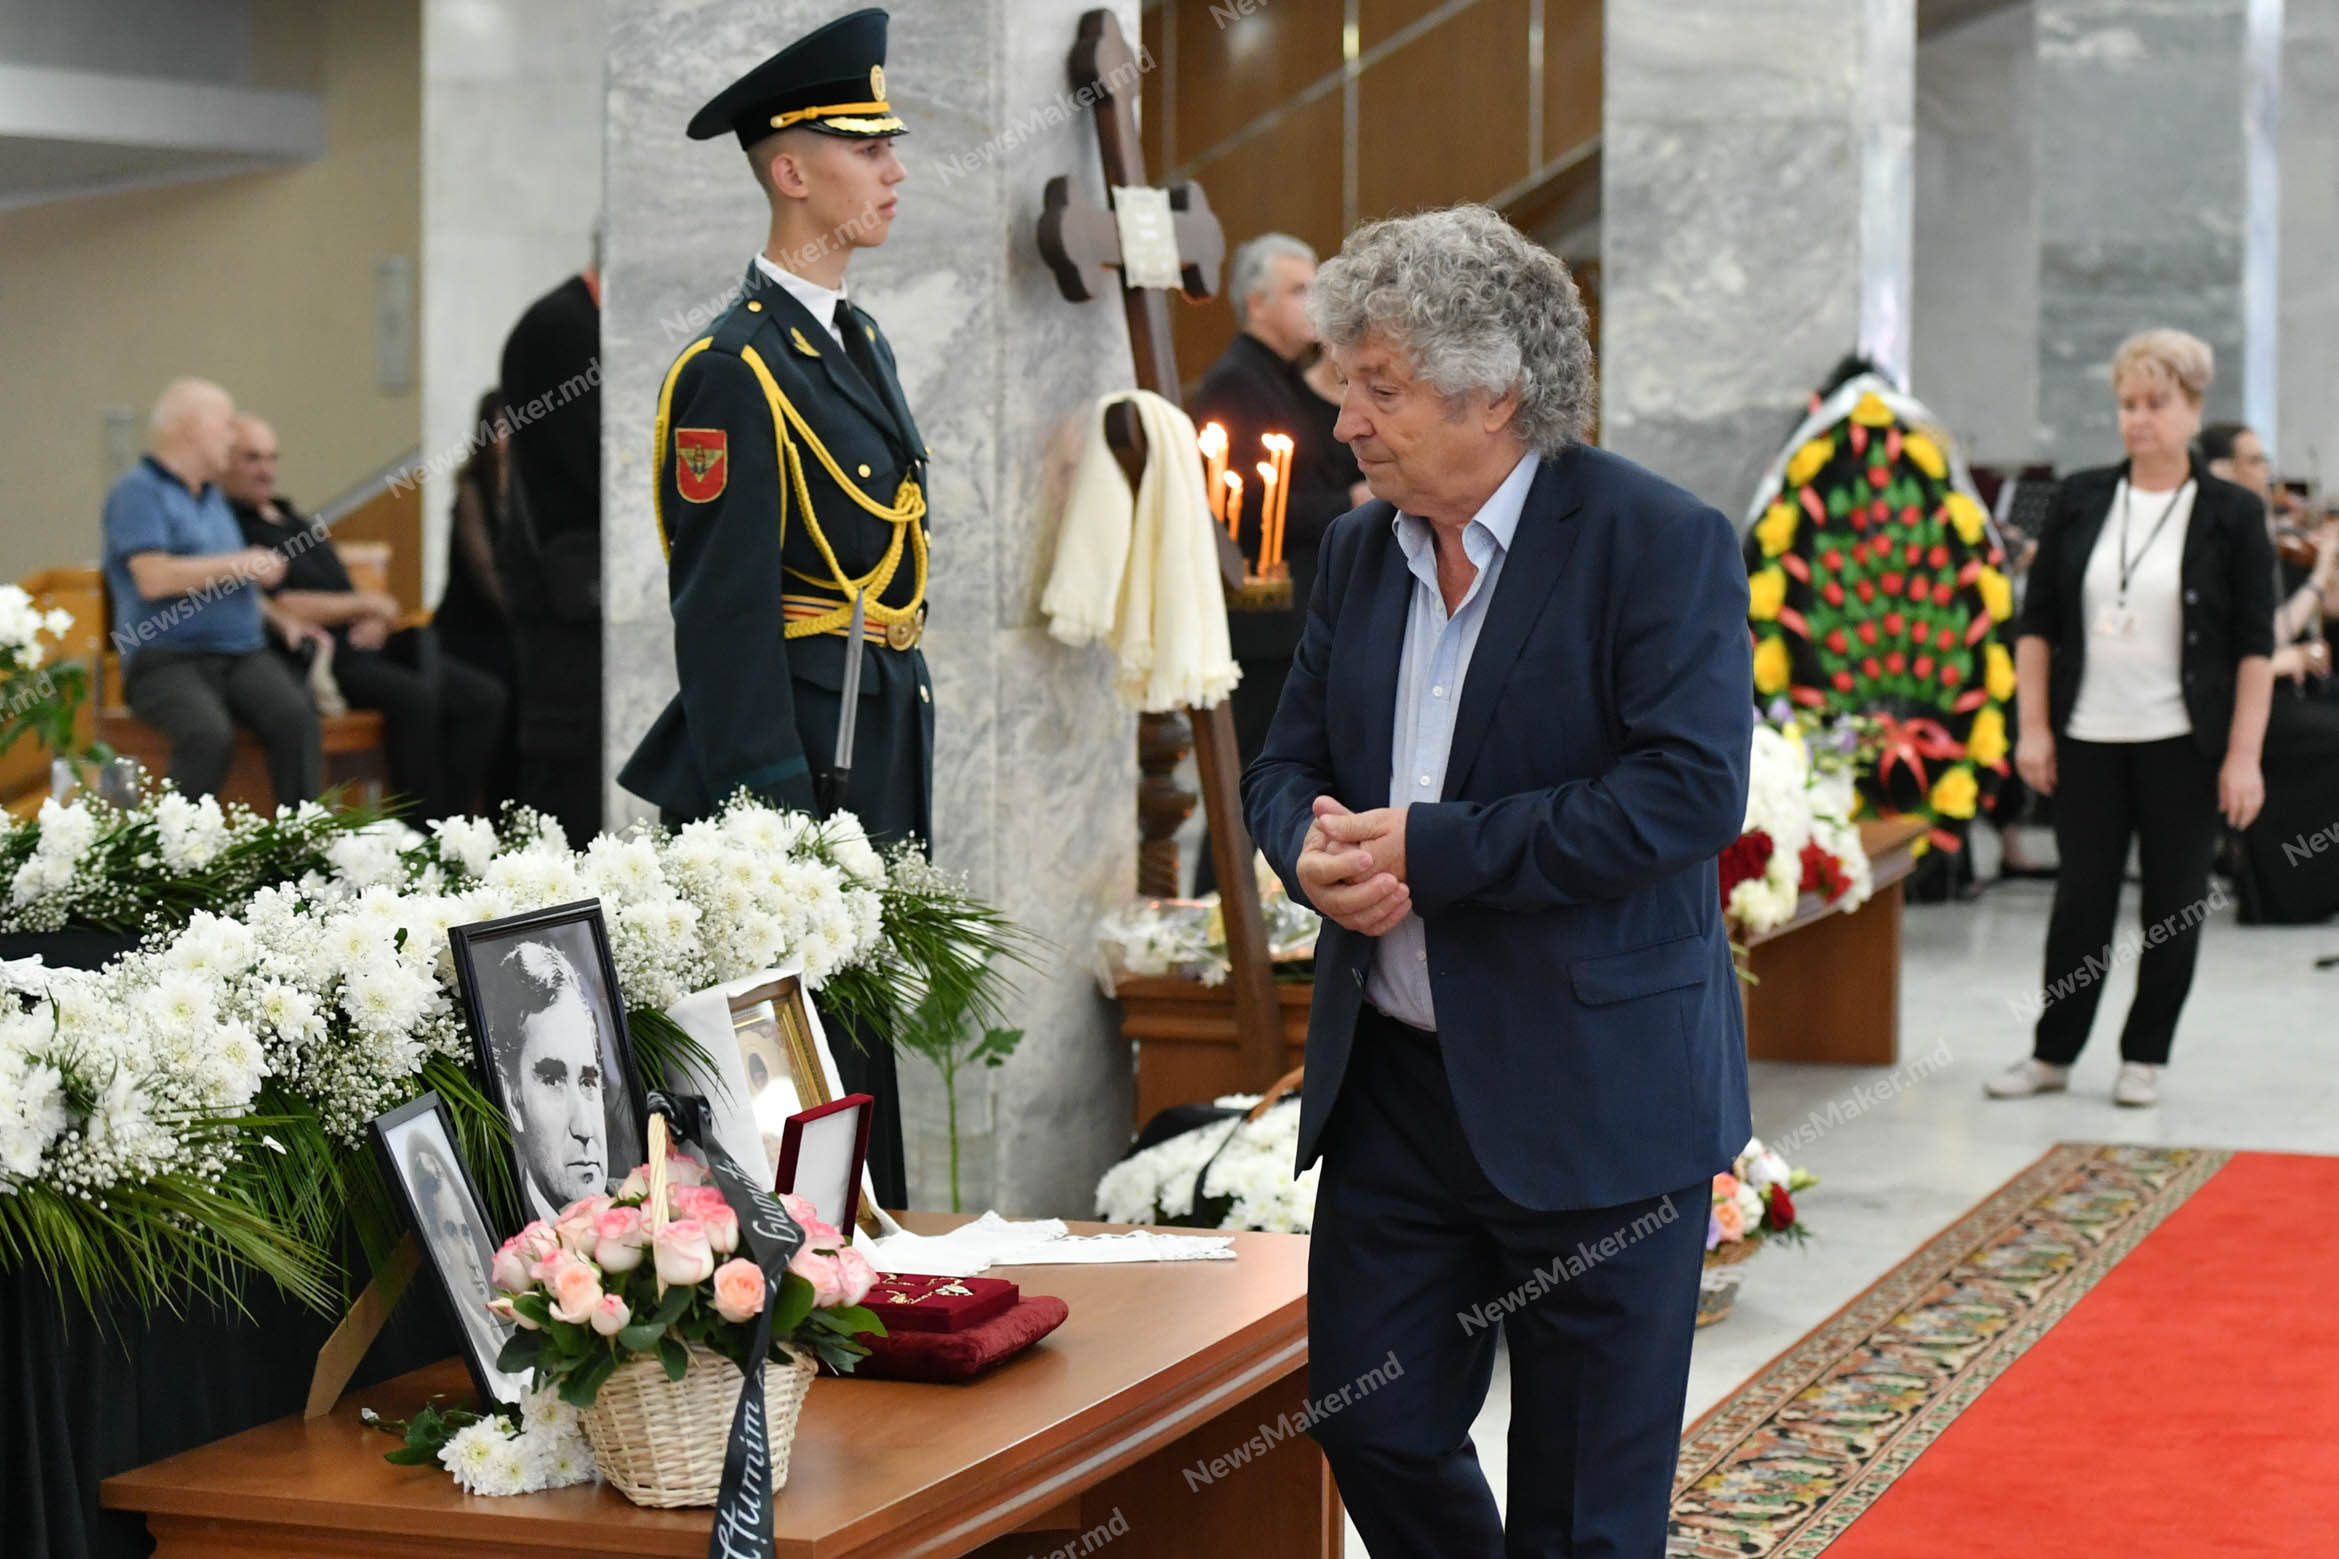 (ФОТО) В Кишиневе прошла церемония прощания с Вангели и траурный марш. Фоторепортаж NM